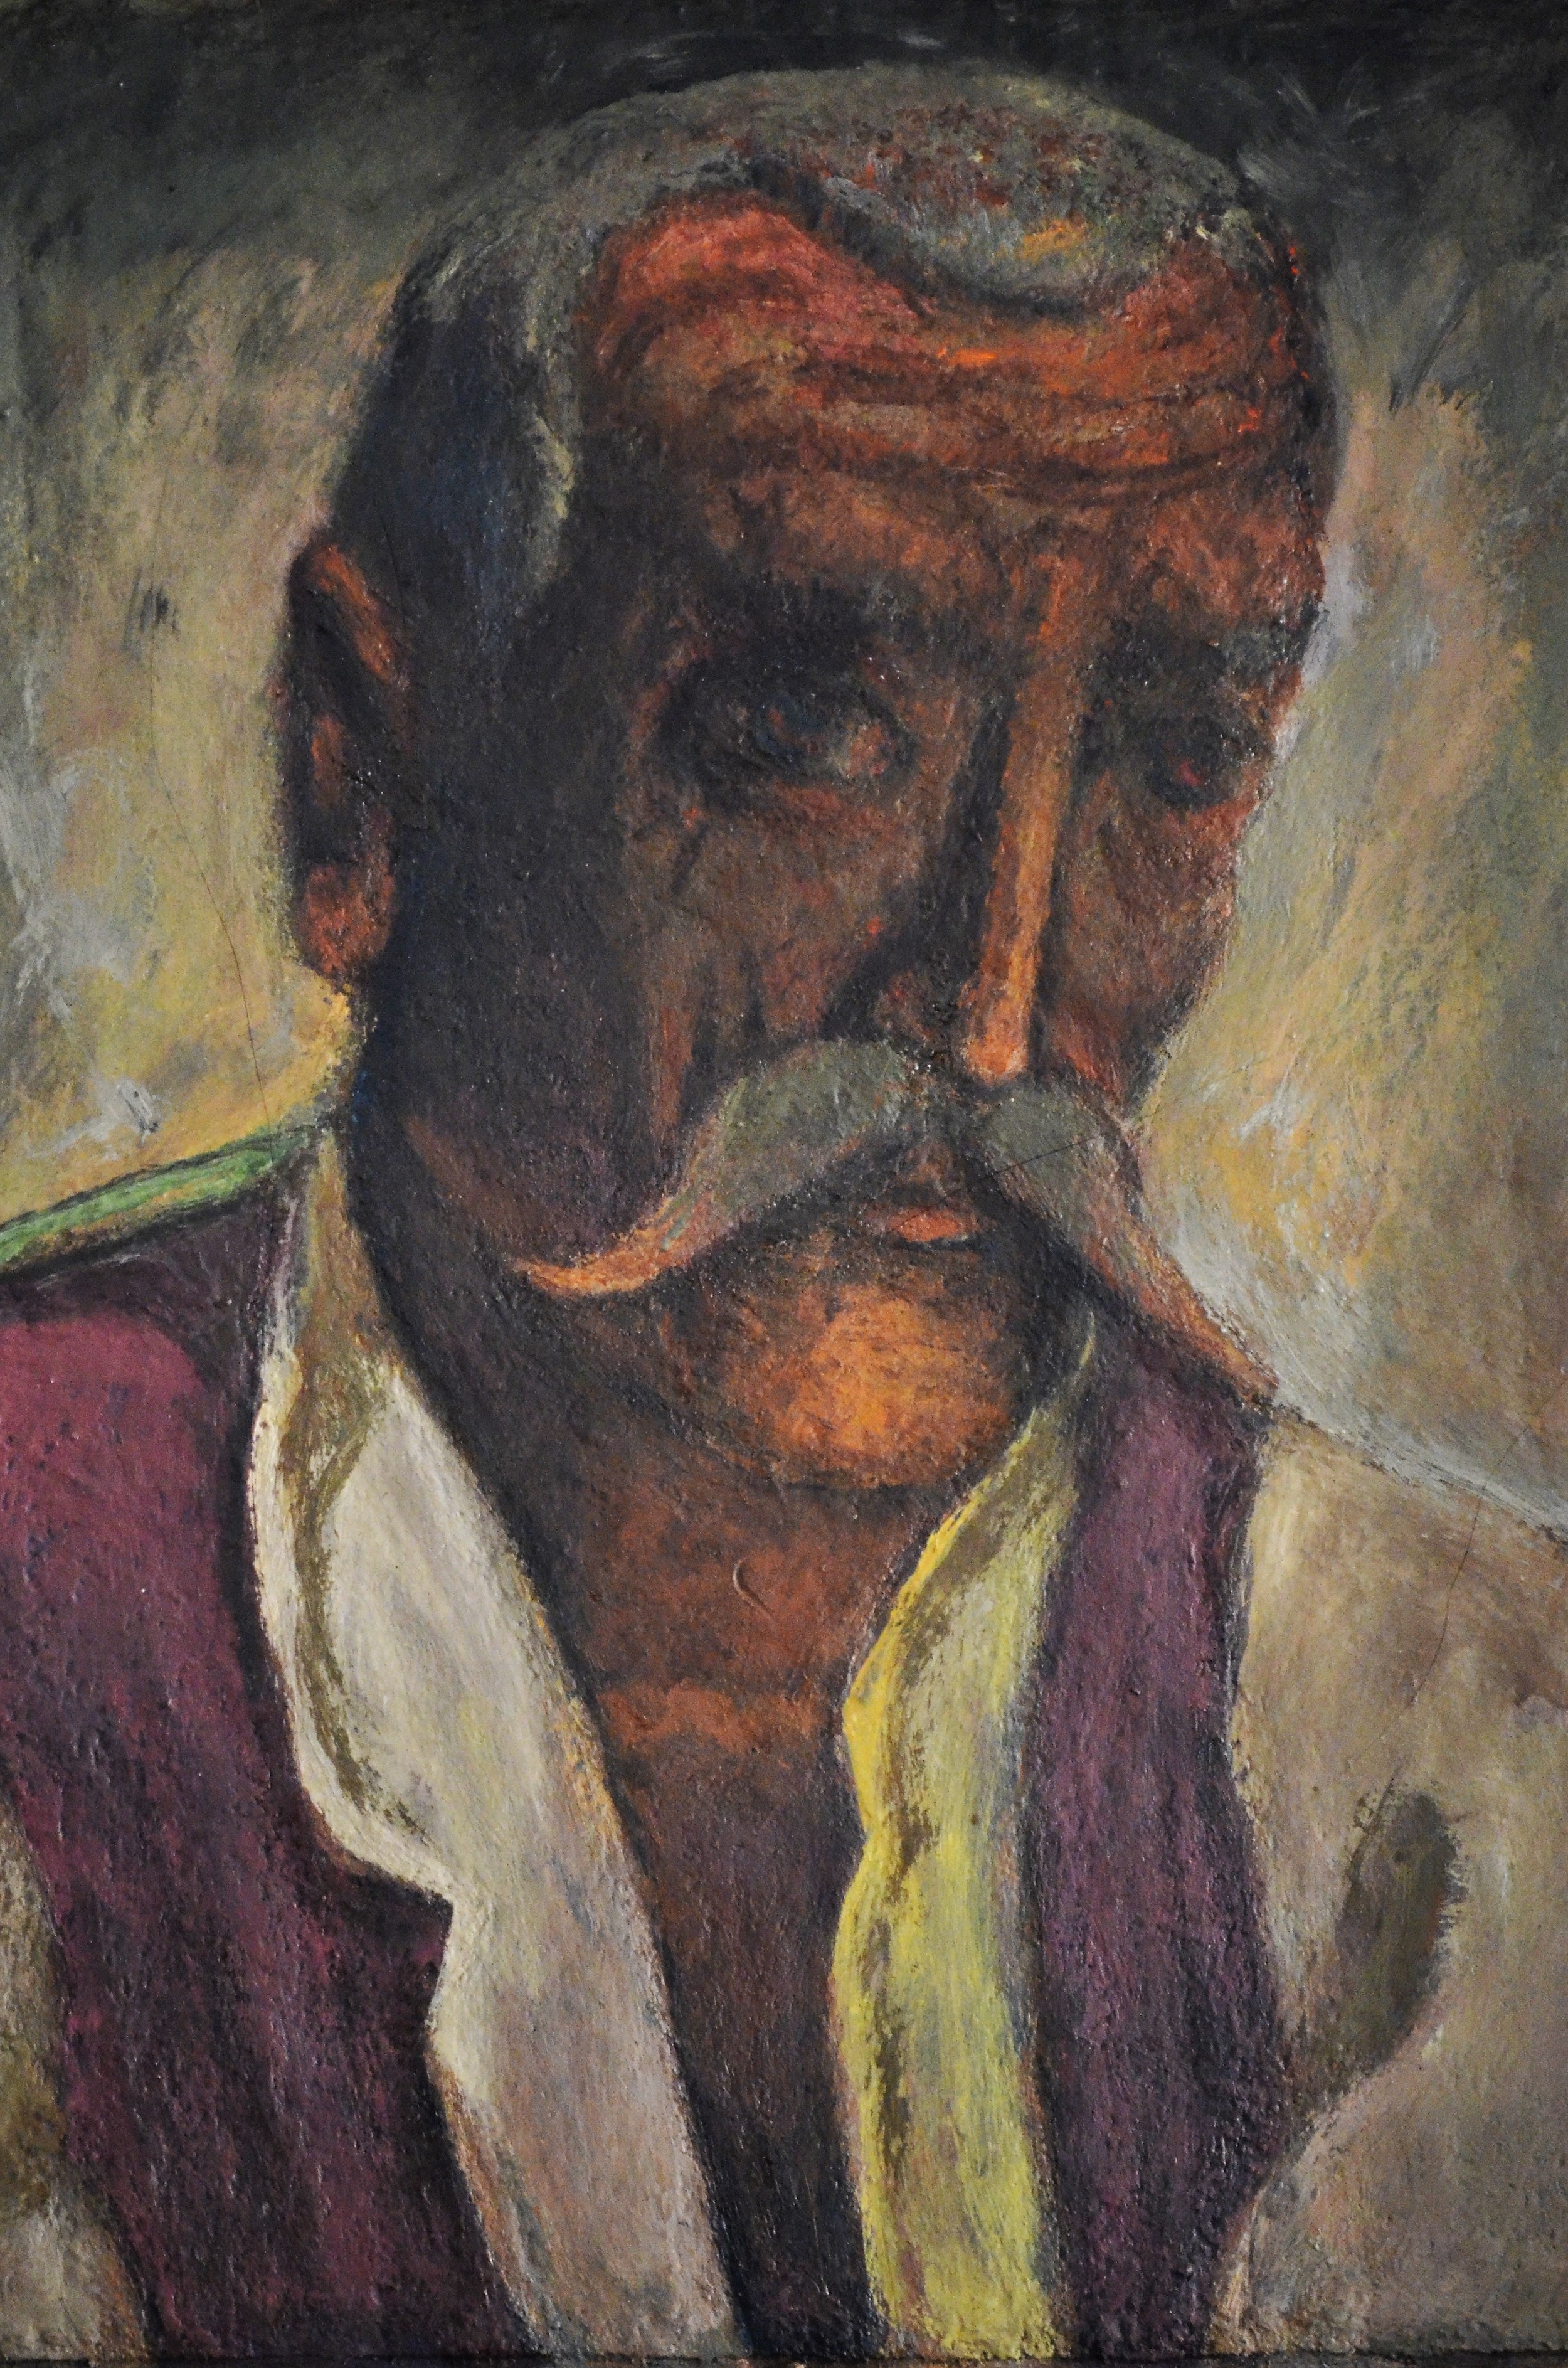 لوحة لرجل عجوز by Lazar Drljača - 1962 